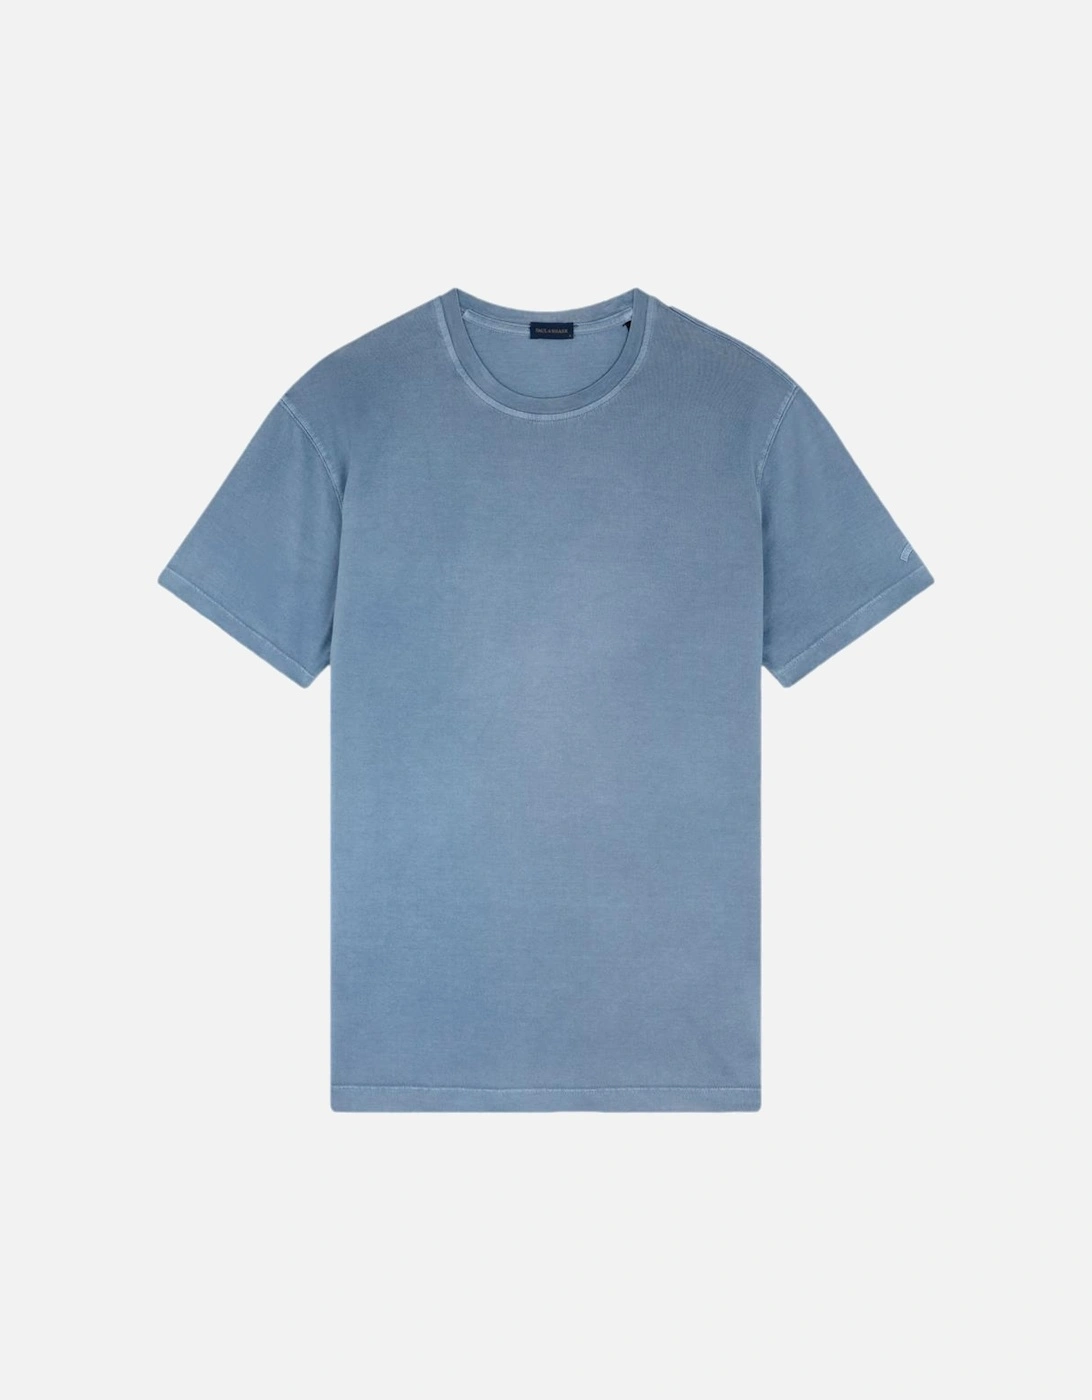 GD Cotton Jersey T-Shirt 635 Dark Denim, 4 of 3